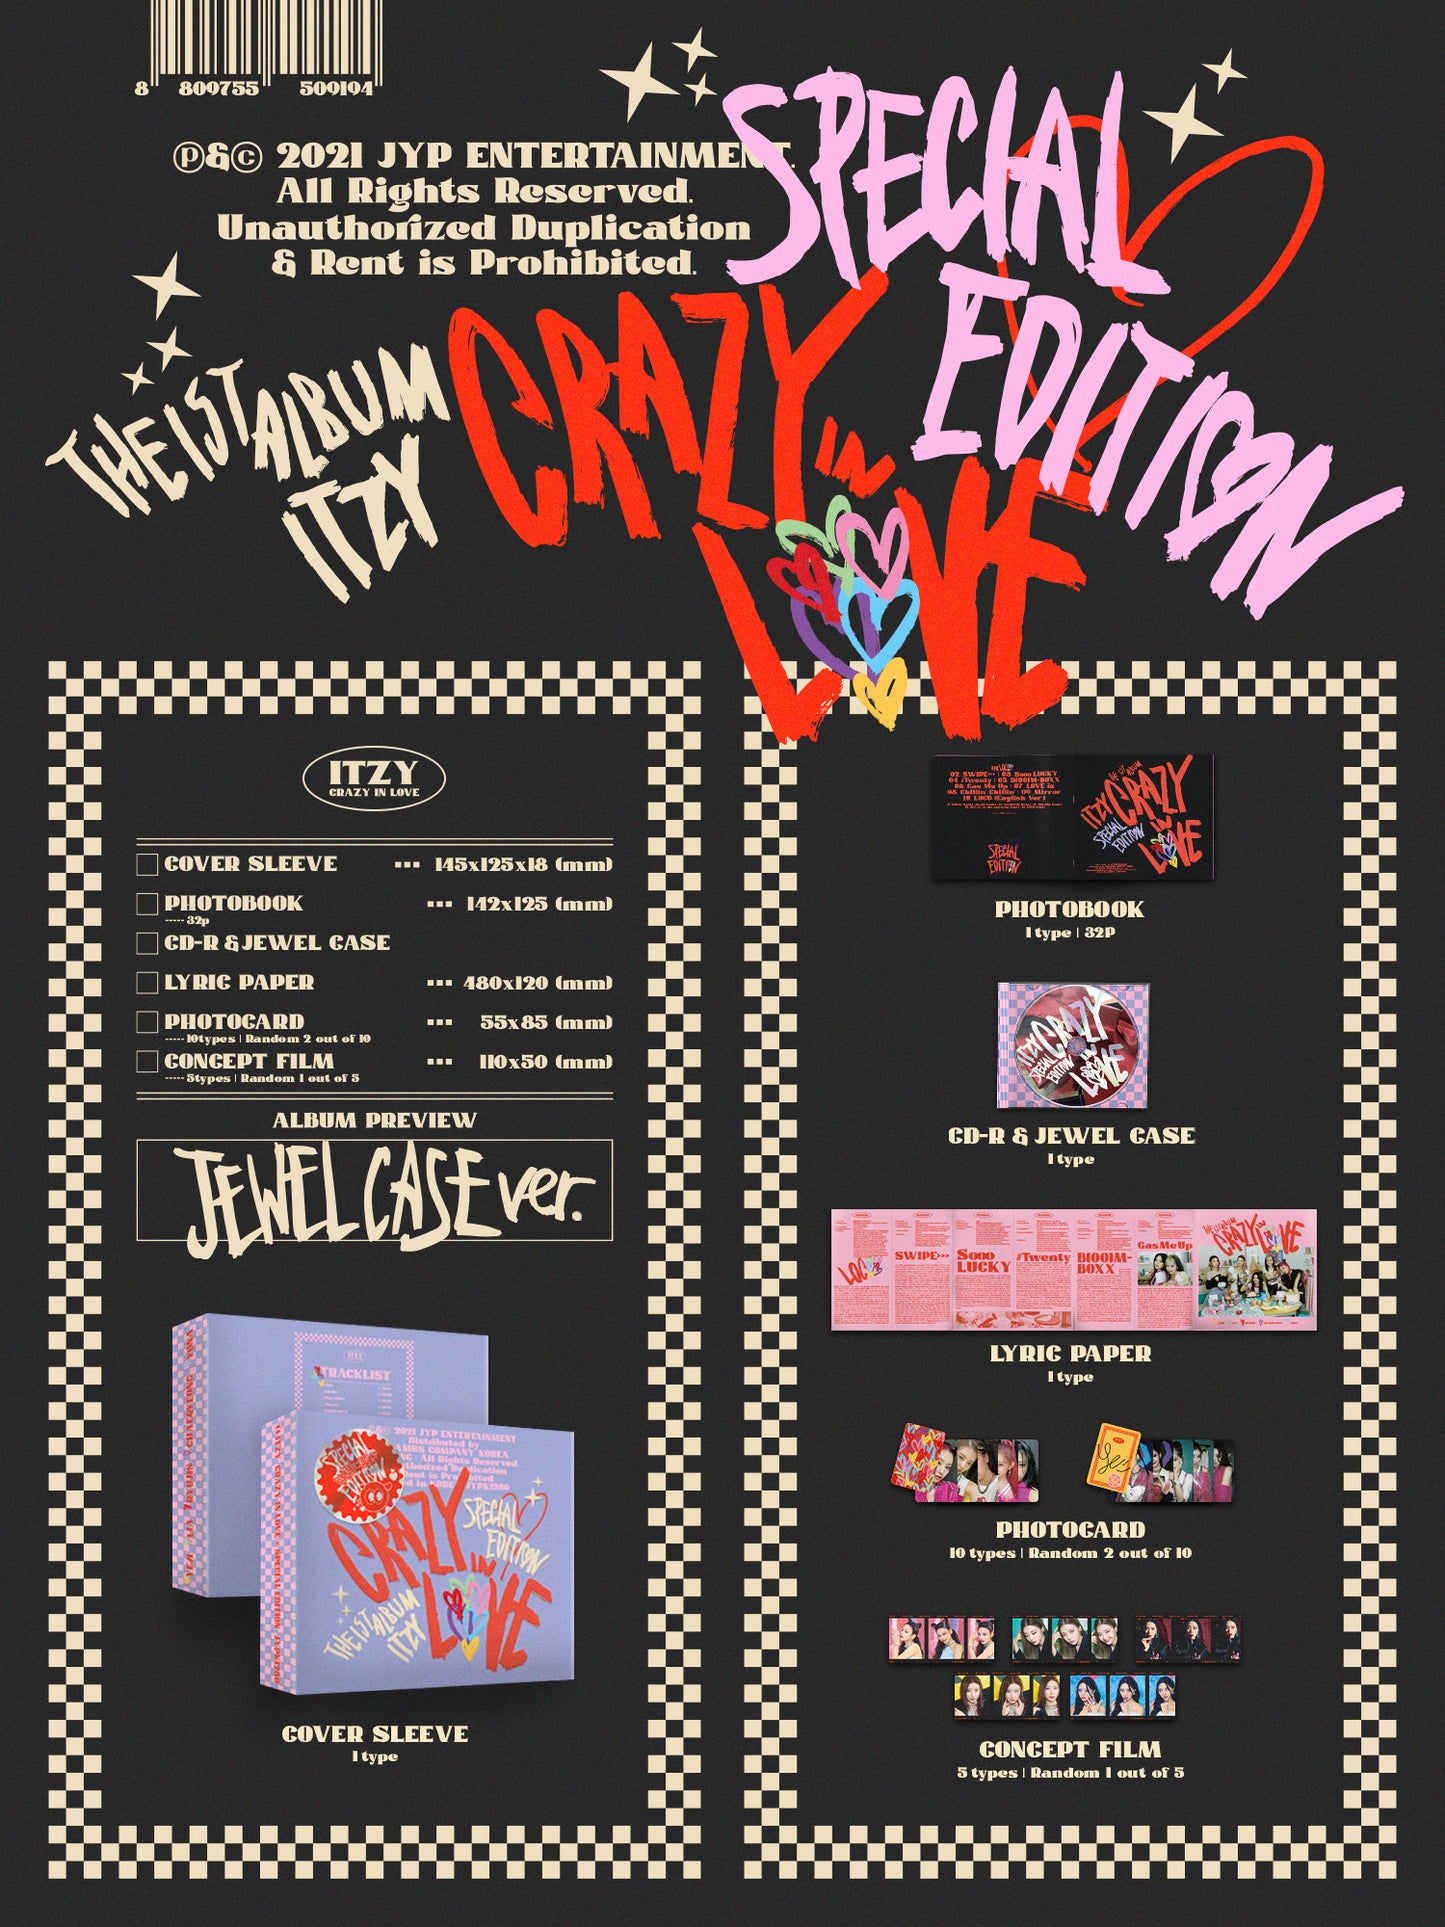 ITZY Album Vol. 1 - CRAZY IN LOVE (Special Edition) (JEWEL CASE Ver.)